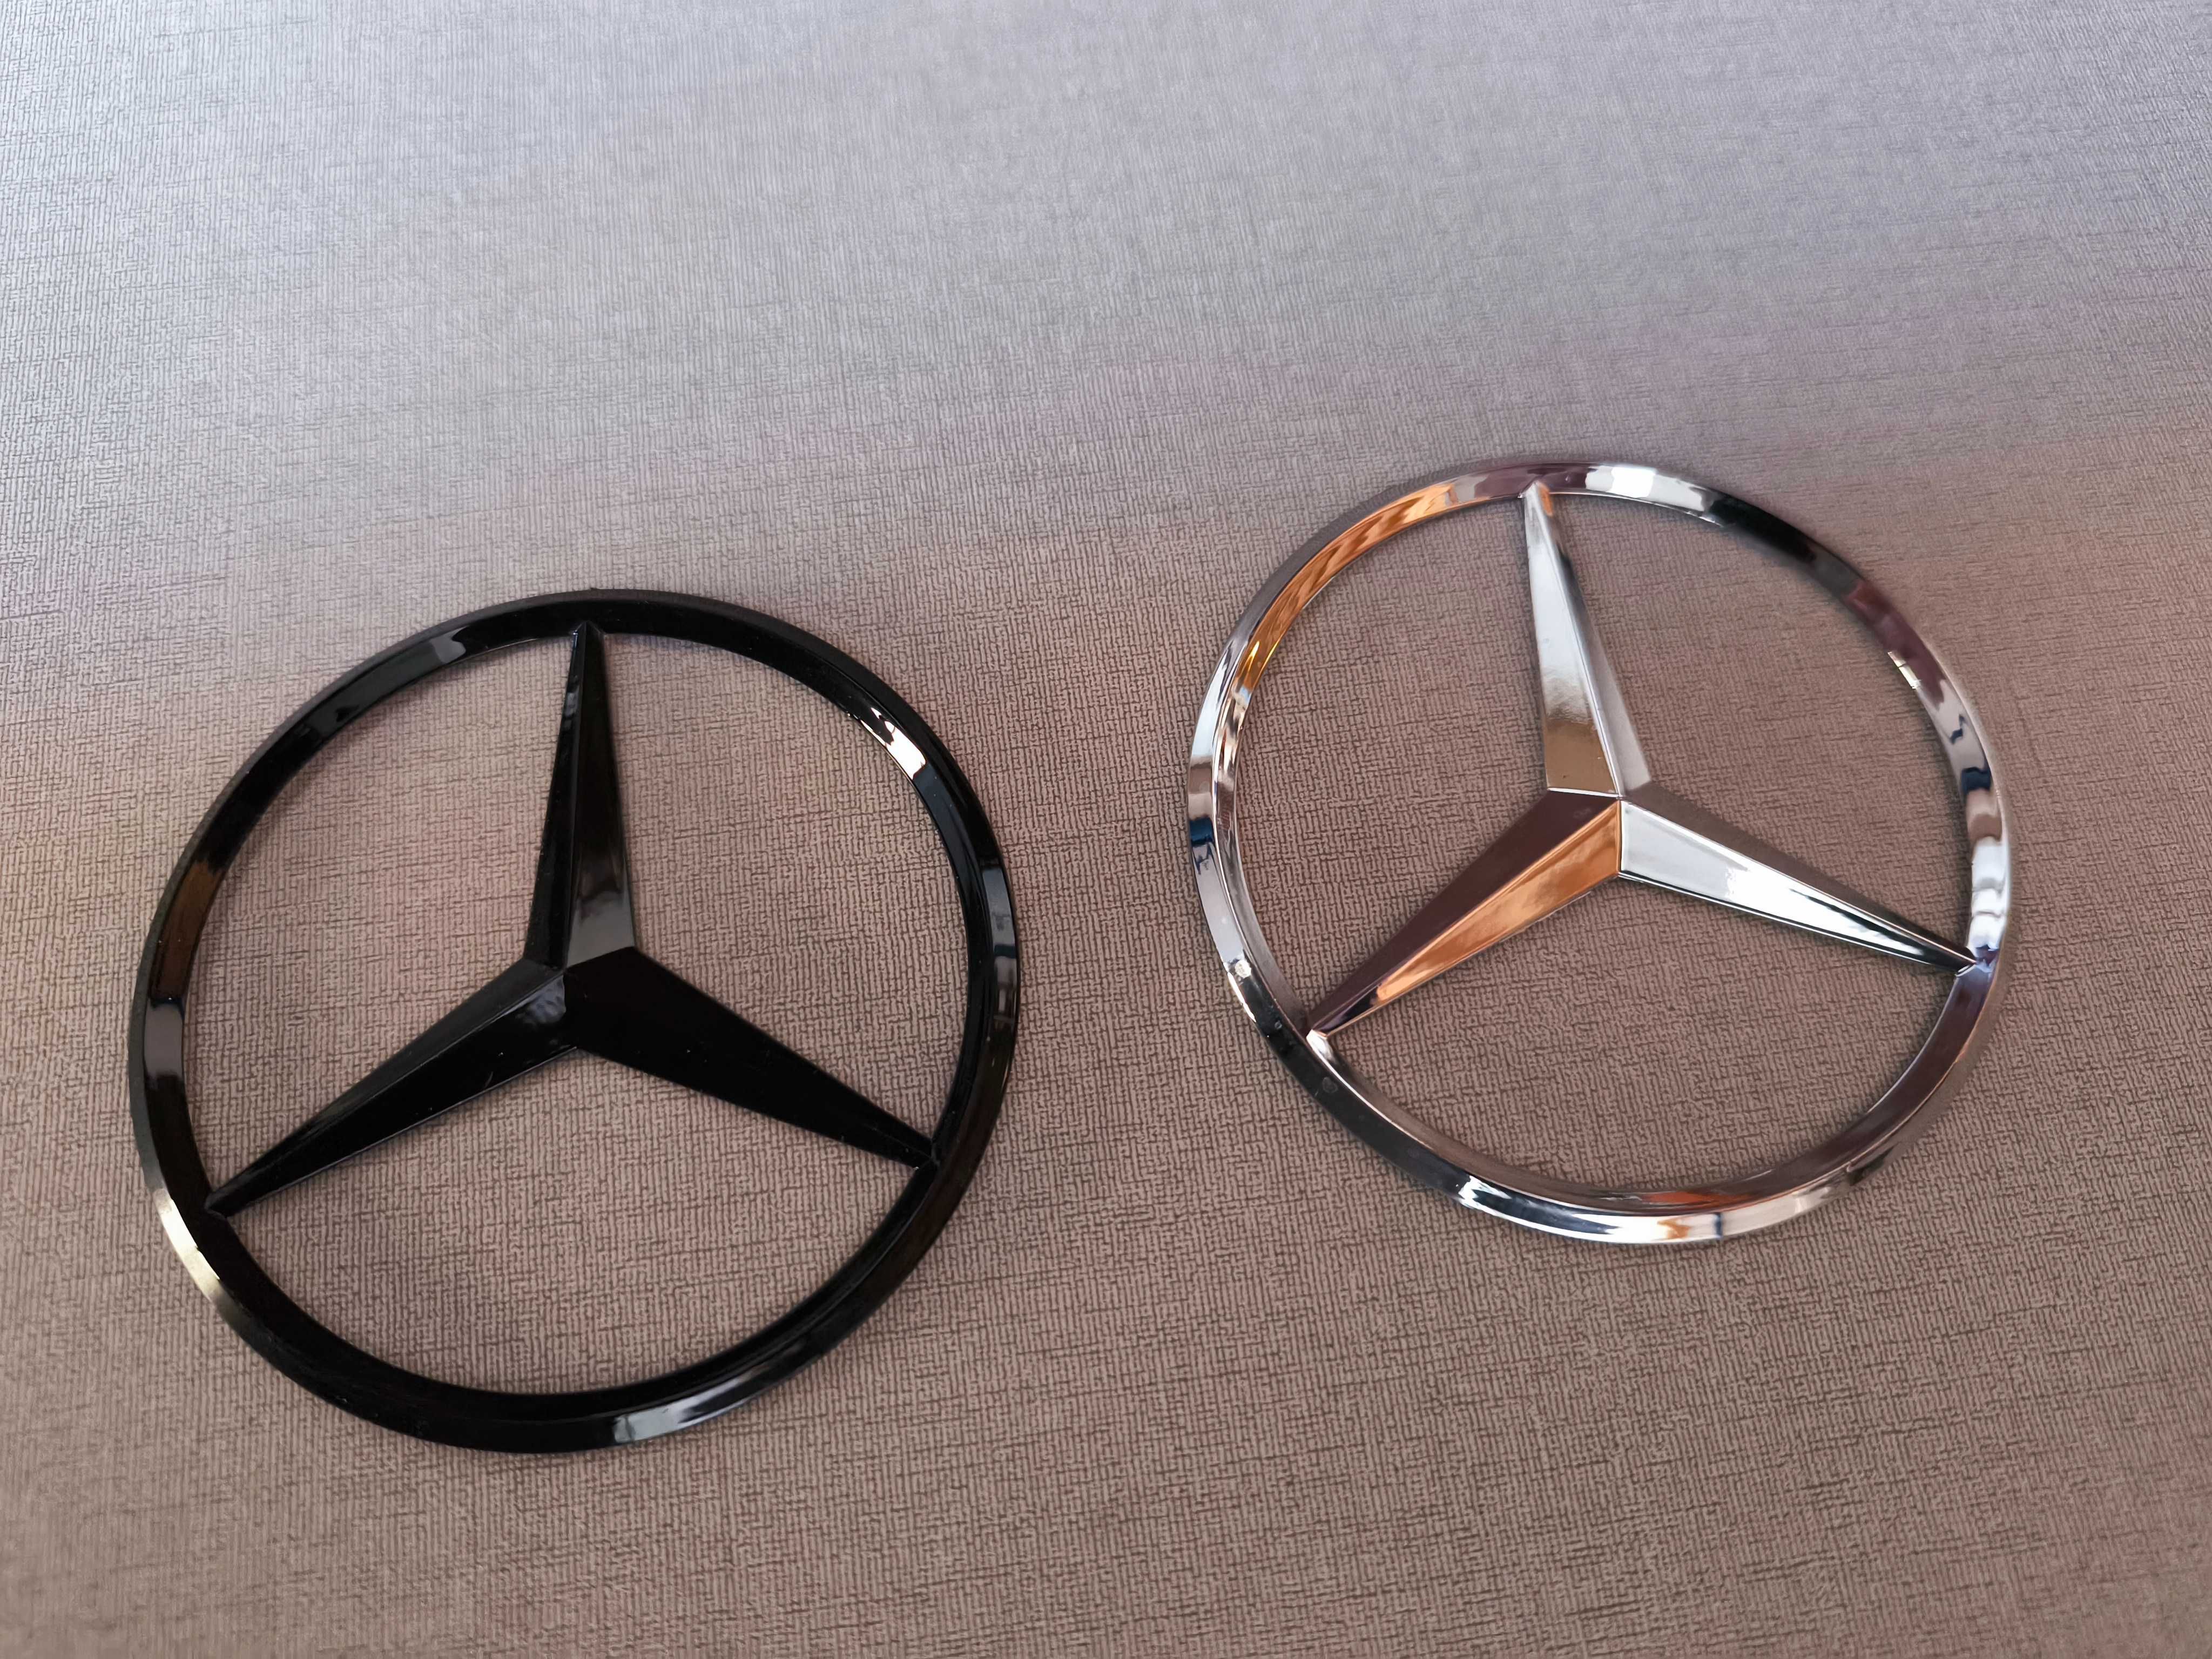 Emblema Símbolo capô ou bagageira Mercedes Benz